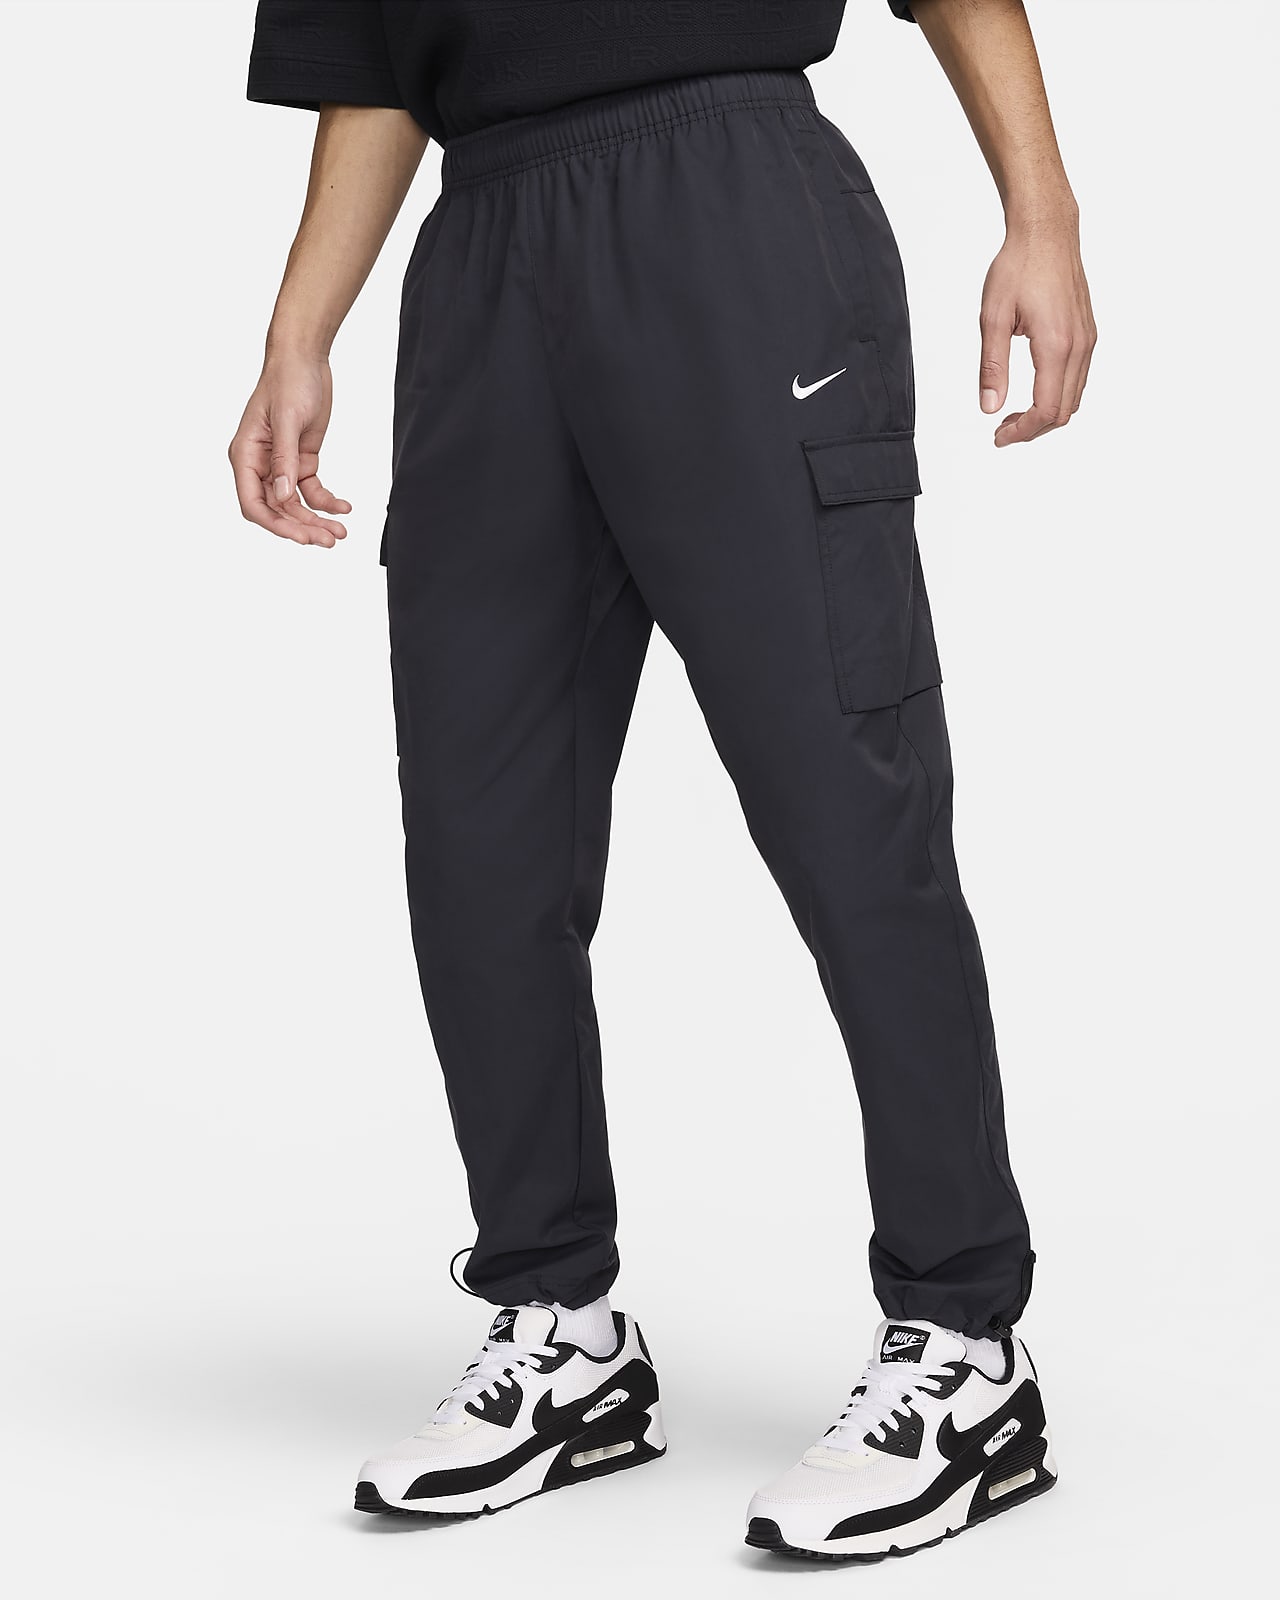 Nike Sportswear Men's Woven Pants